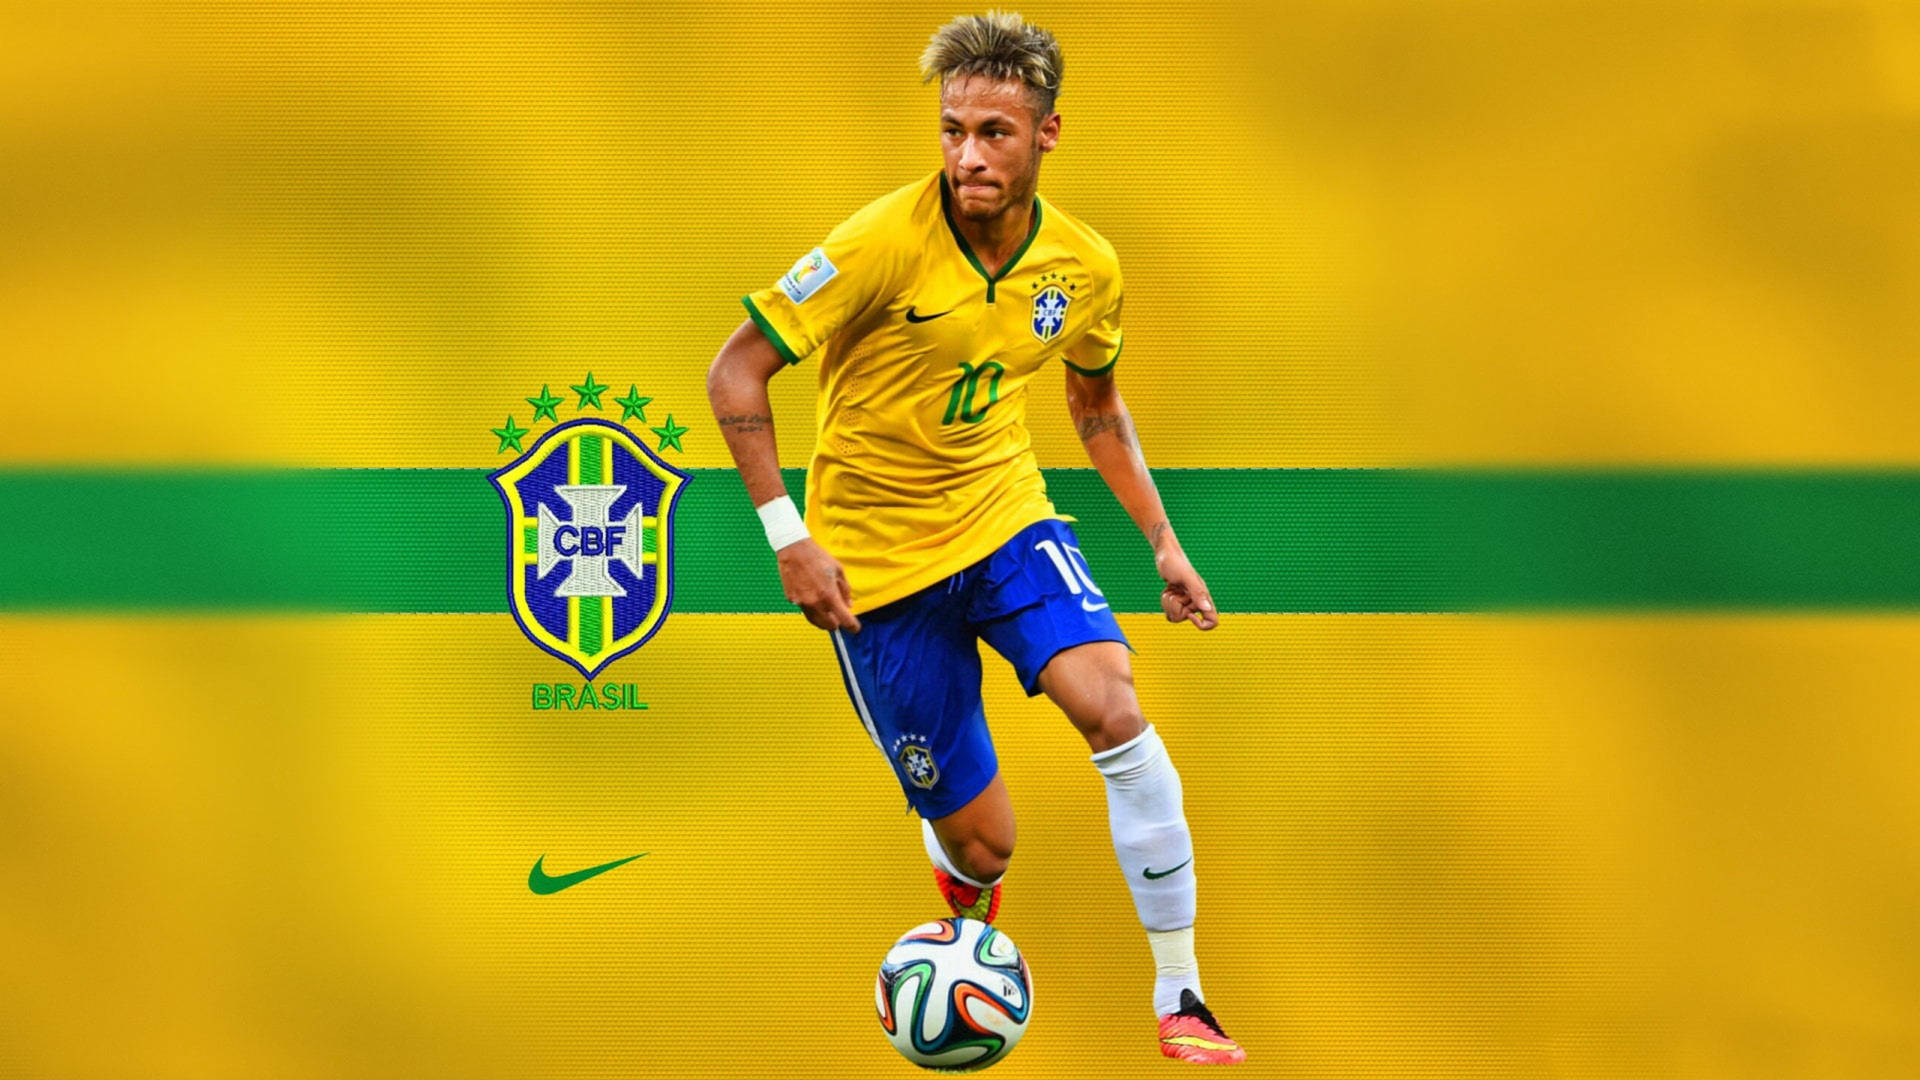 Neymar 4k With Cbf Logo Background